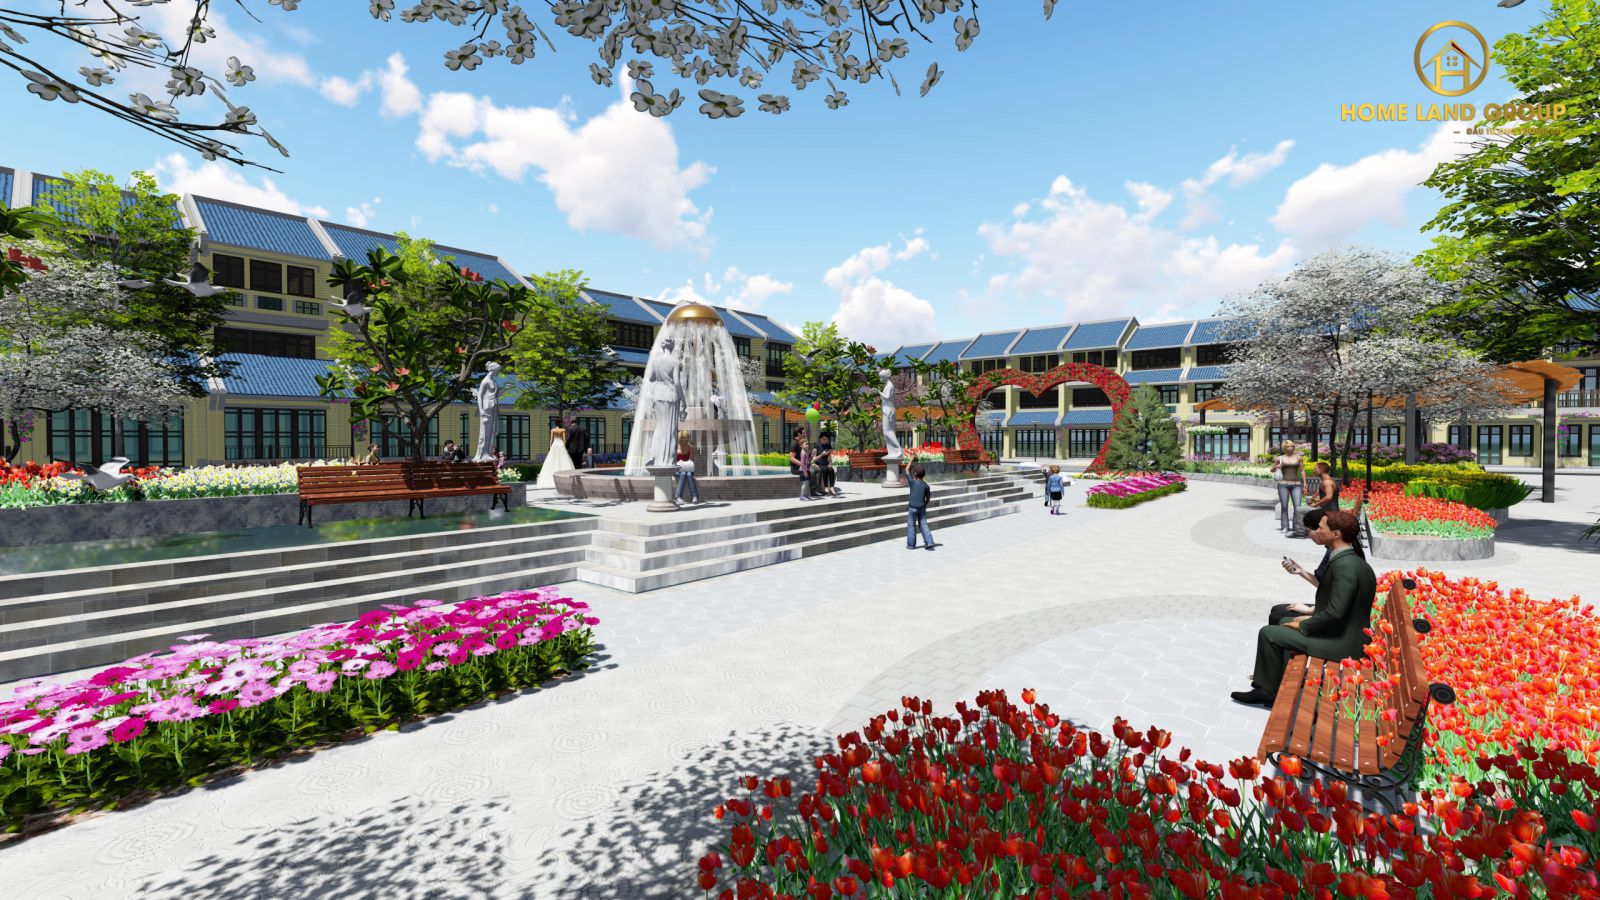 Phối cảnh khu công viên nội khu tổ hợp dự án Homeland Paradise Village Quảng Nam